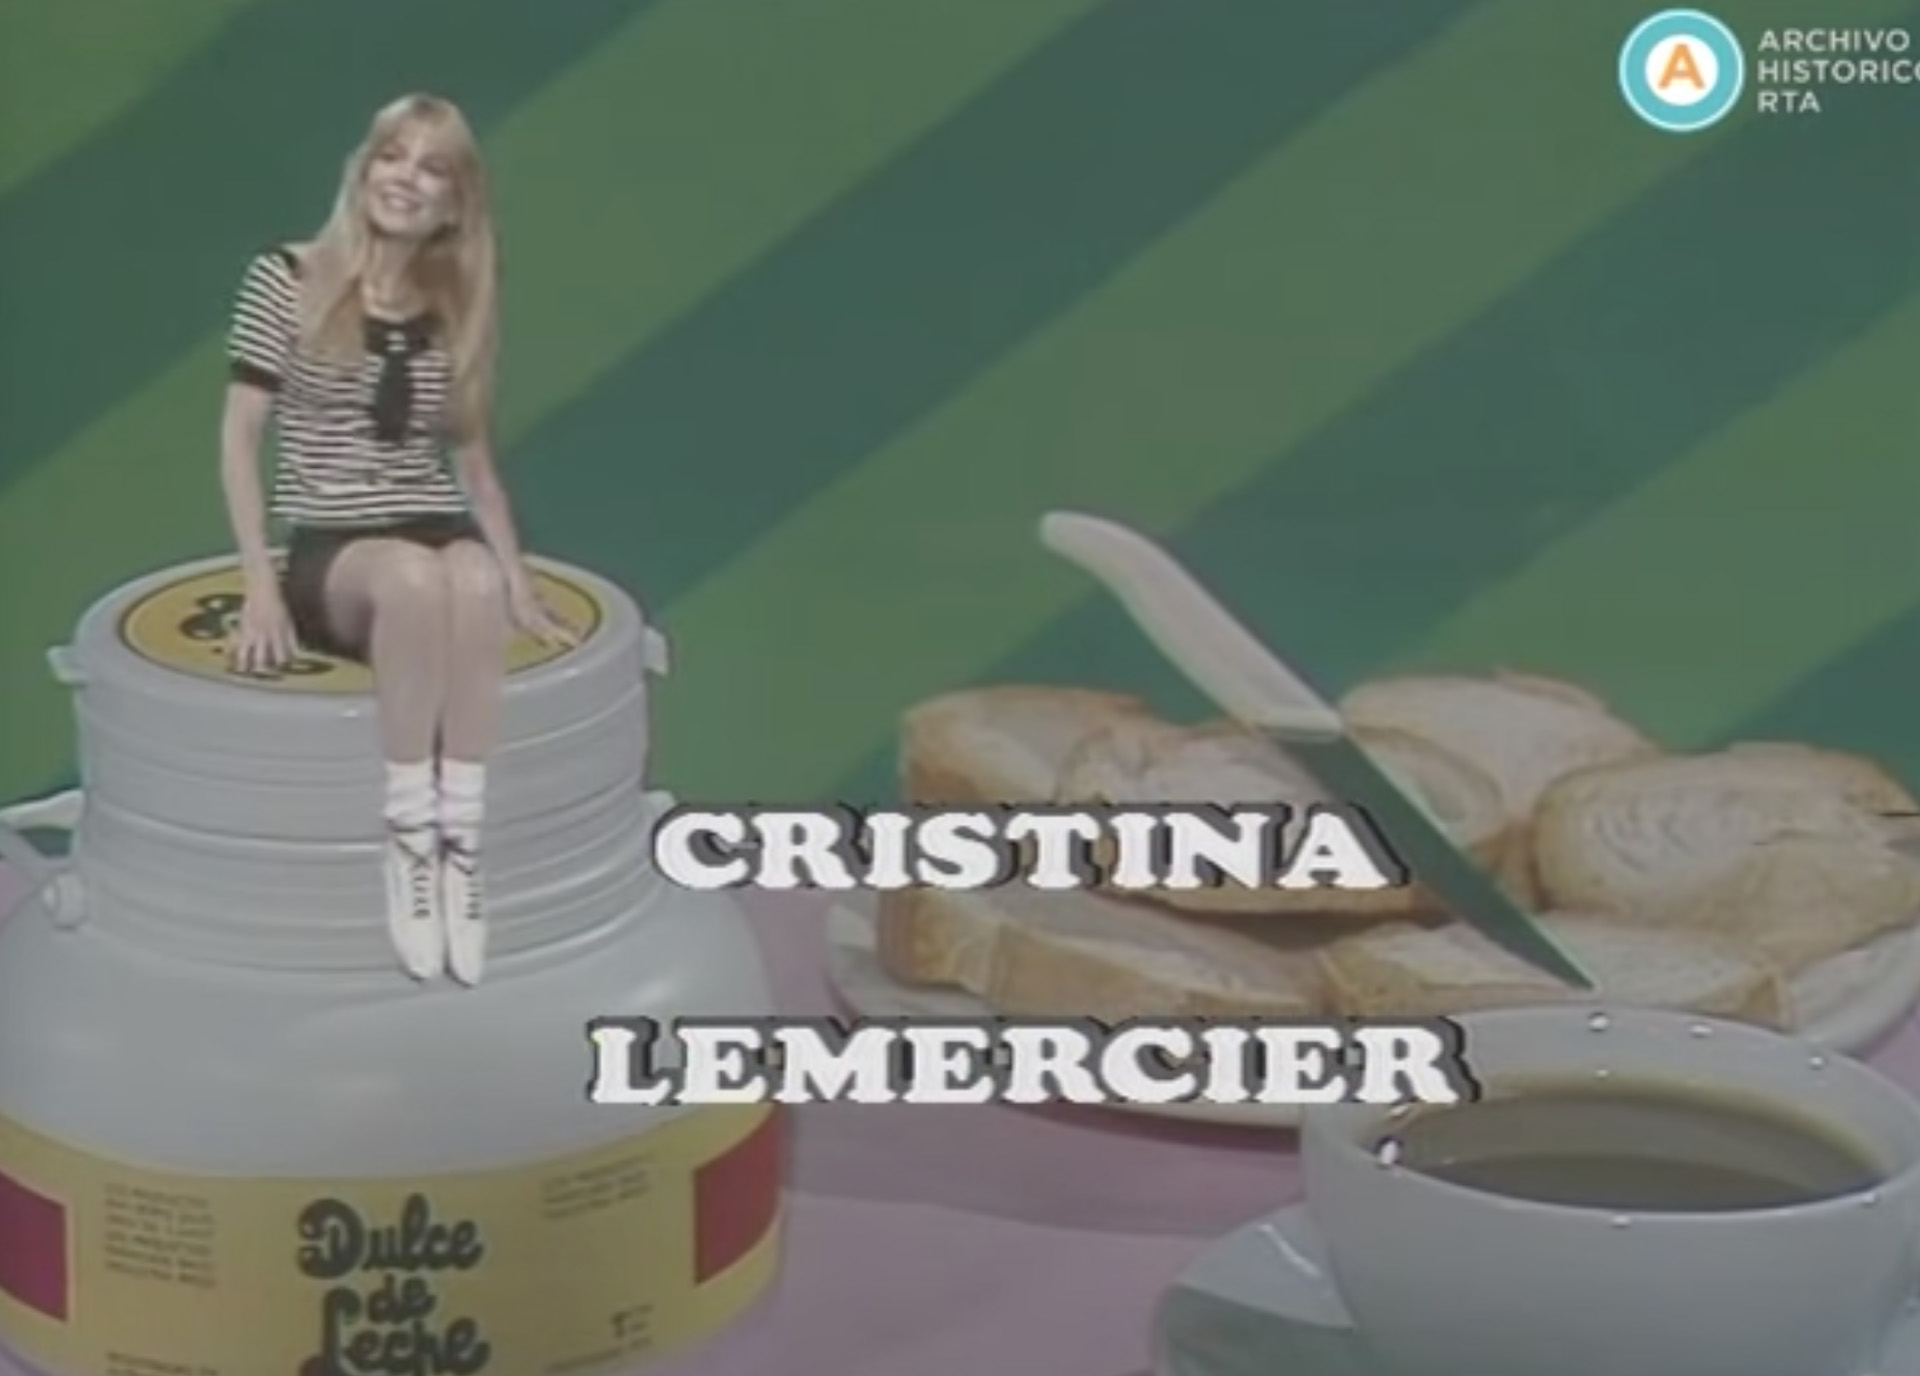 Durante los 90, con el peronismo en el poder y Menem presidente por dos períodos consecutivos, Lemercier volvió a la pantalla de ATC con ciclos infantiles como Cristina y sus amigos, Dulce de leche y Boomerang (Imagen: captura de pantalla)